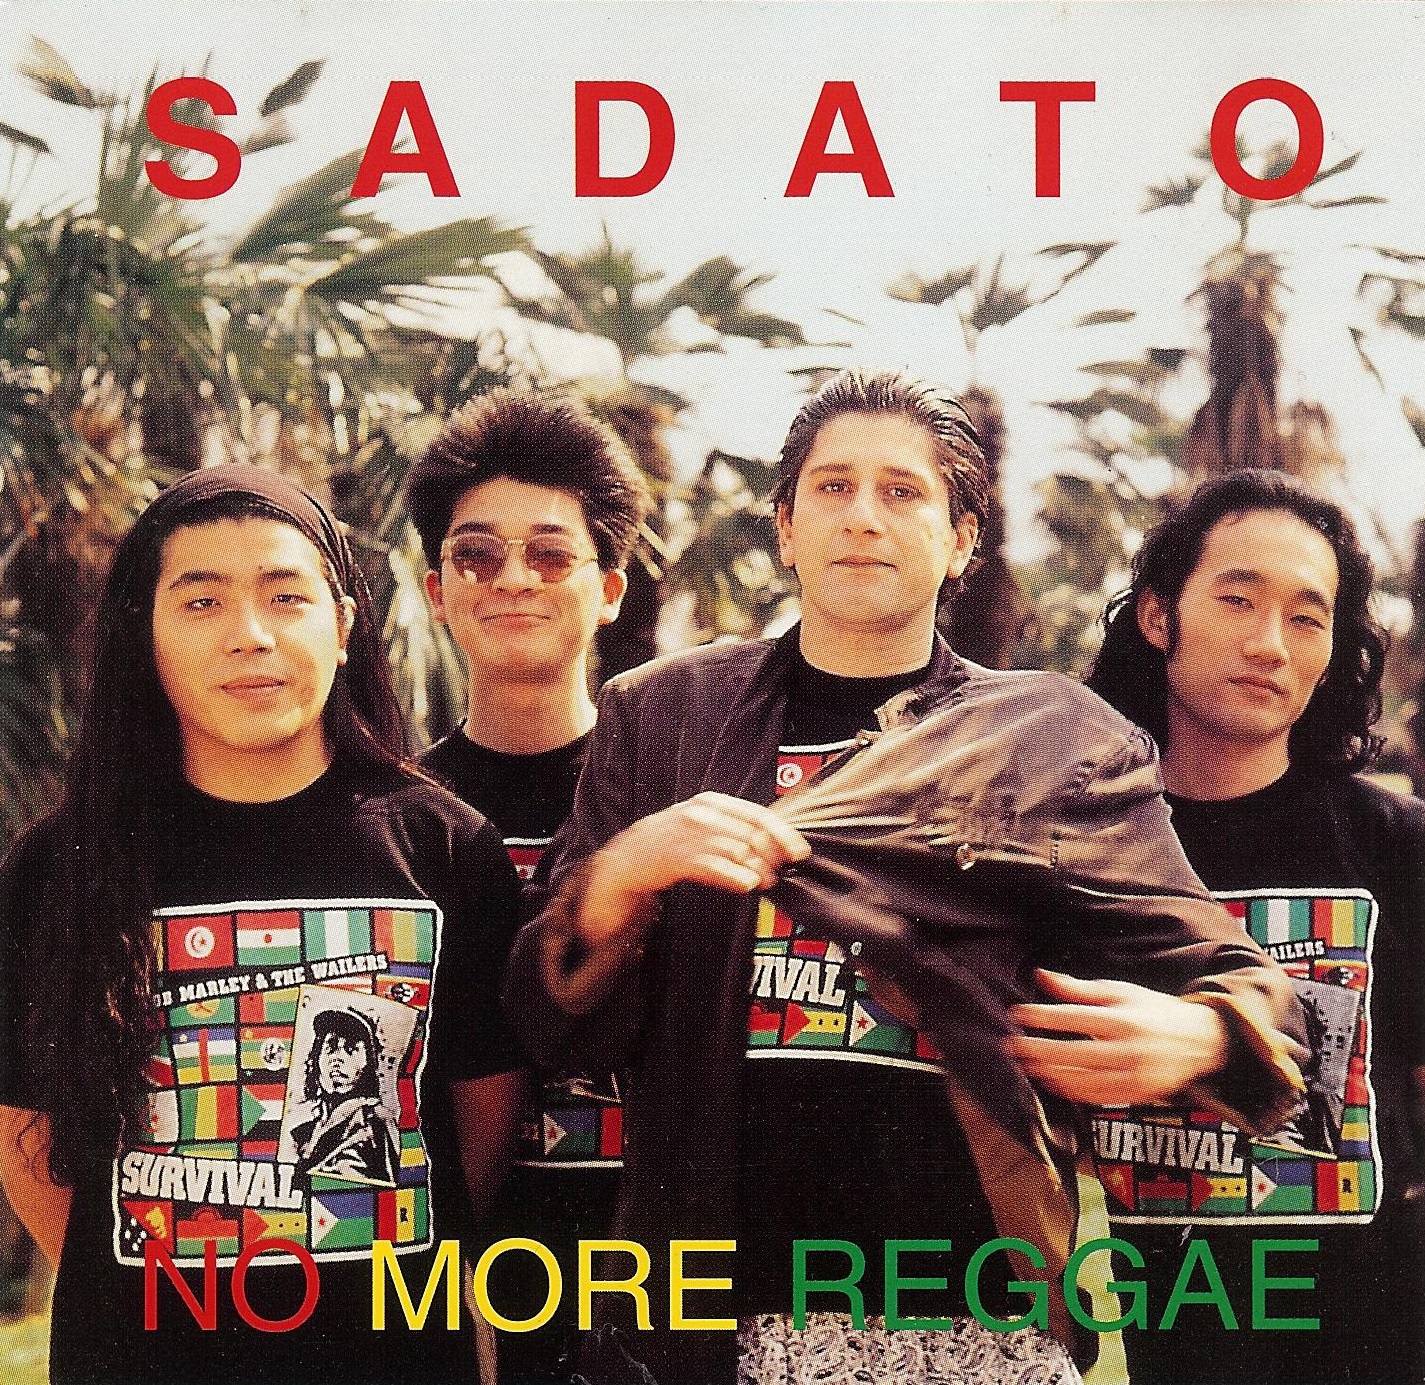  - no-more-reggae-cd-cover